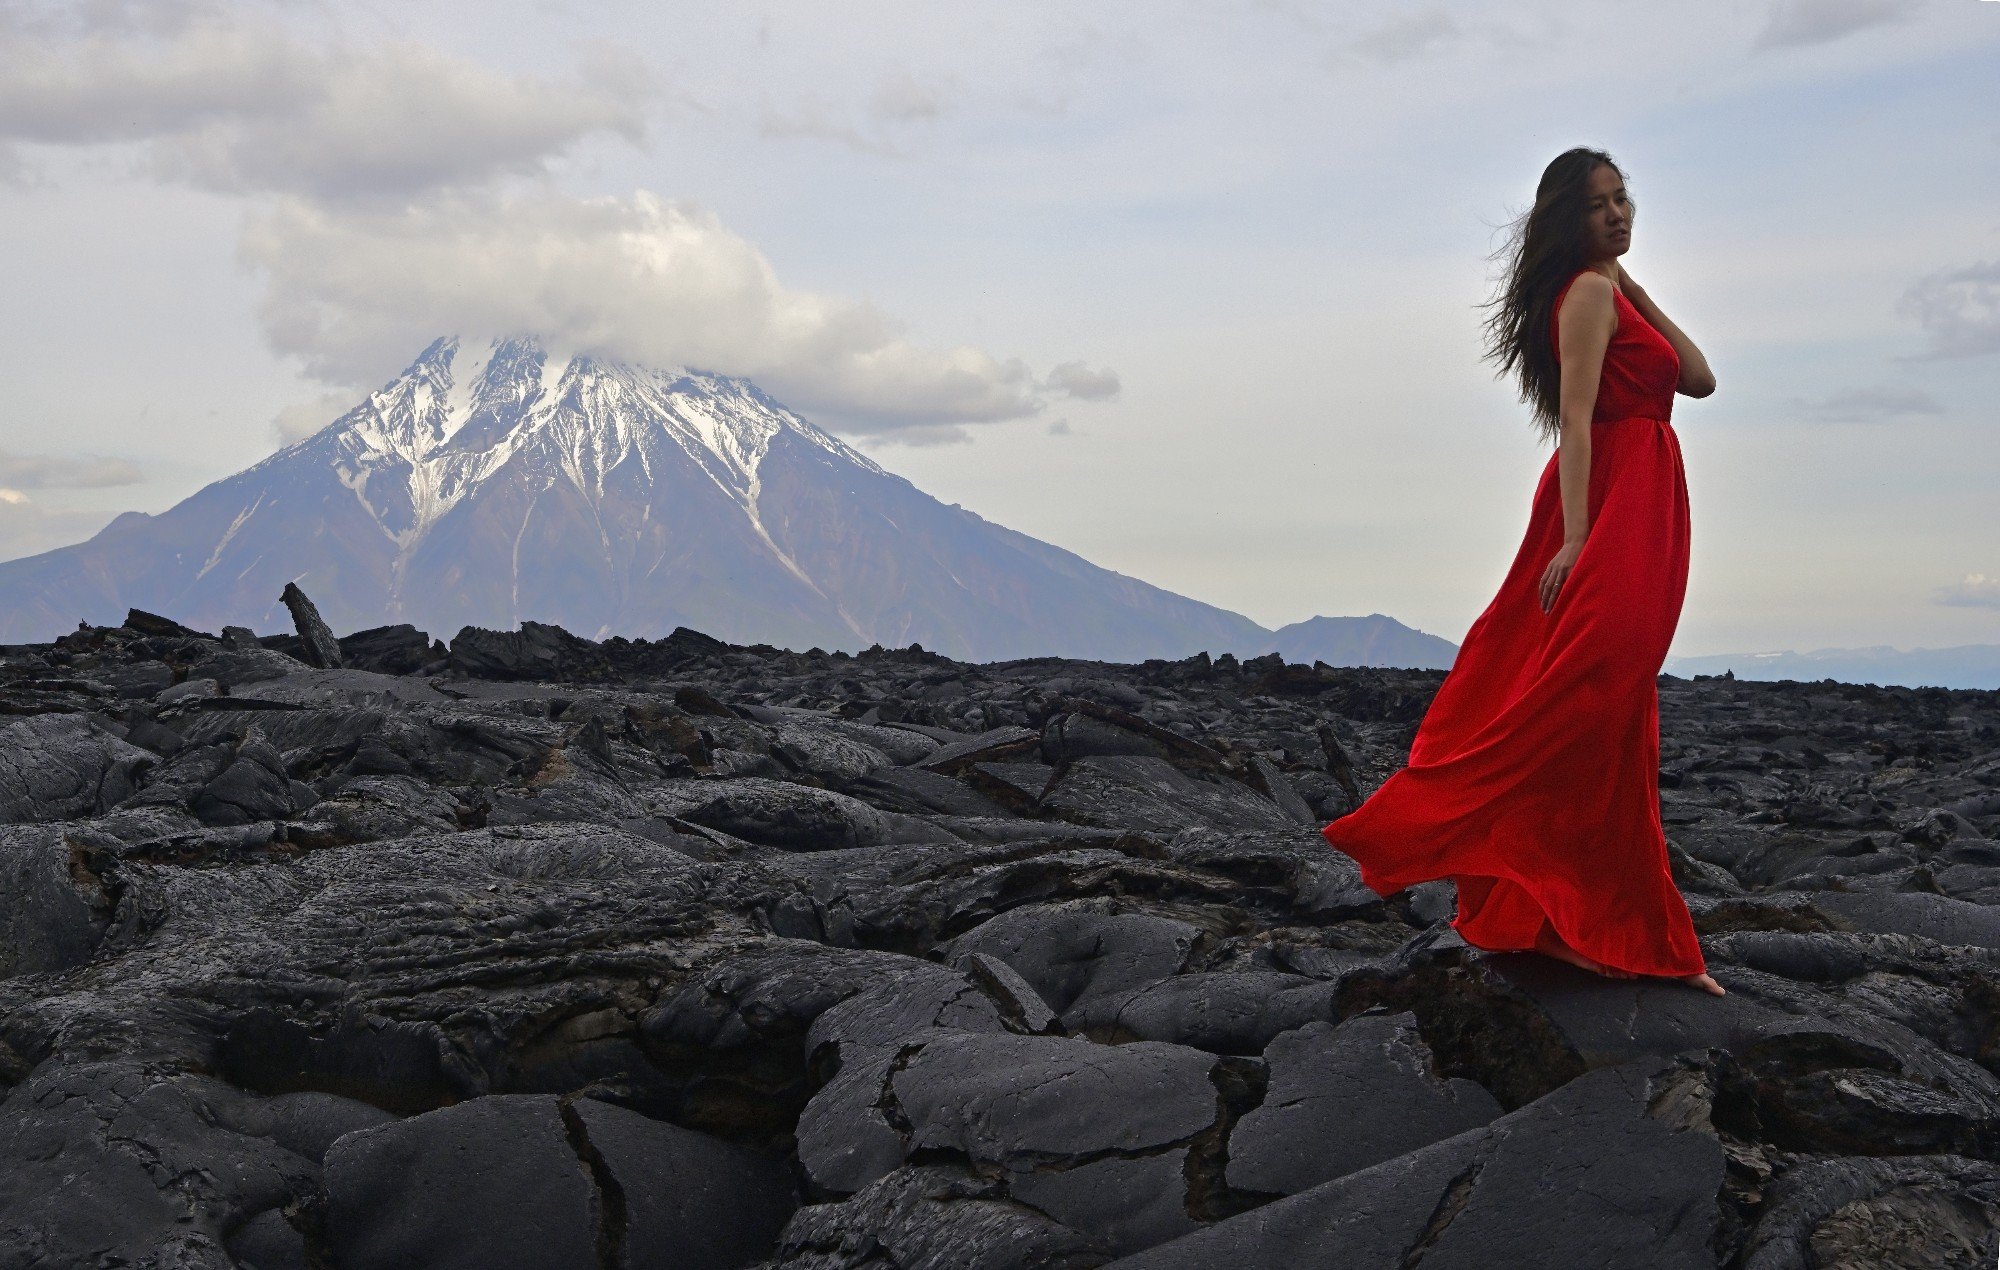 камчатка, девушка, вулкан, лава, фото, красный, Karasev Pavel